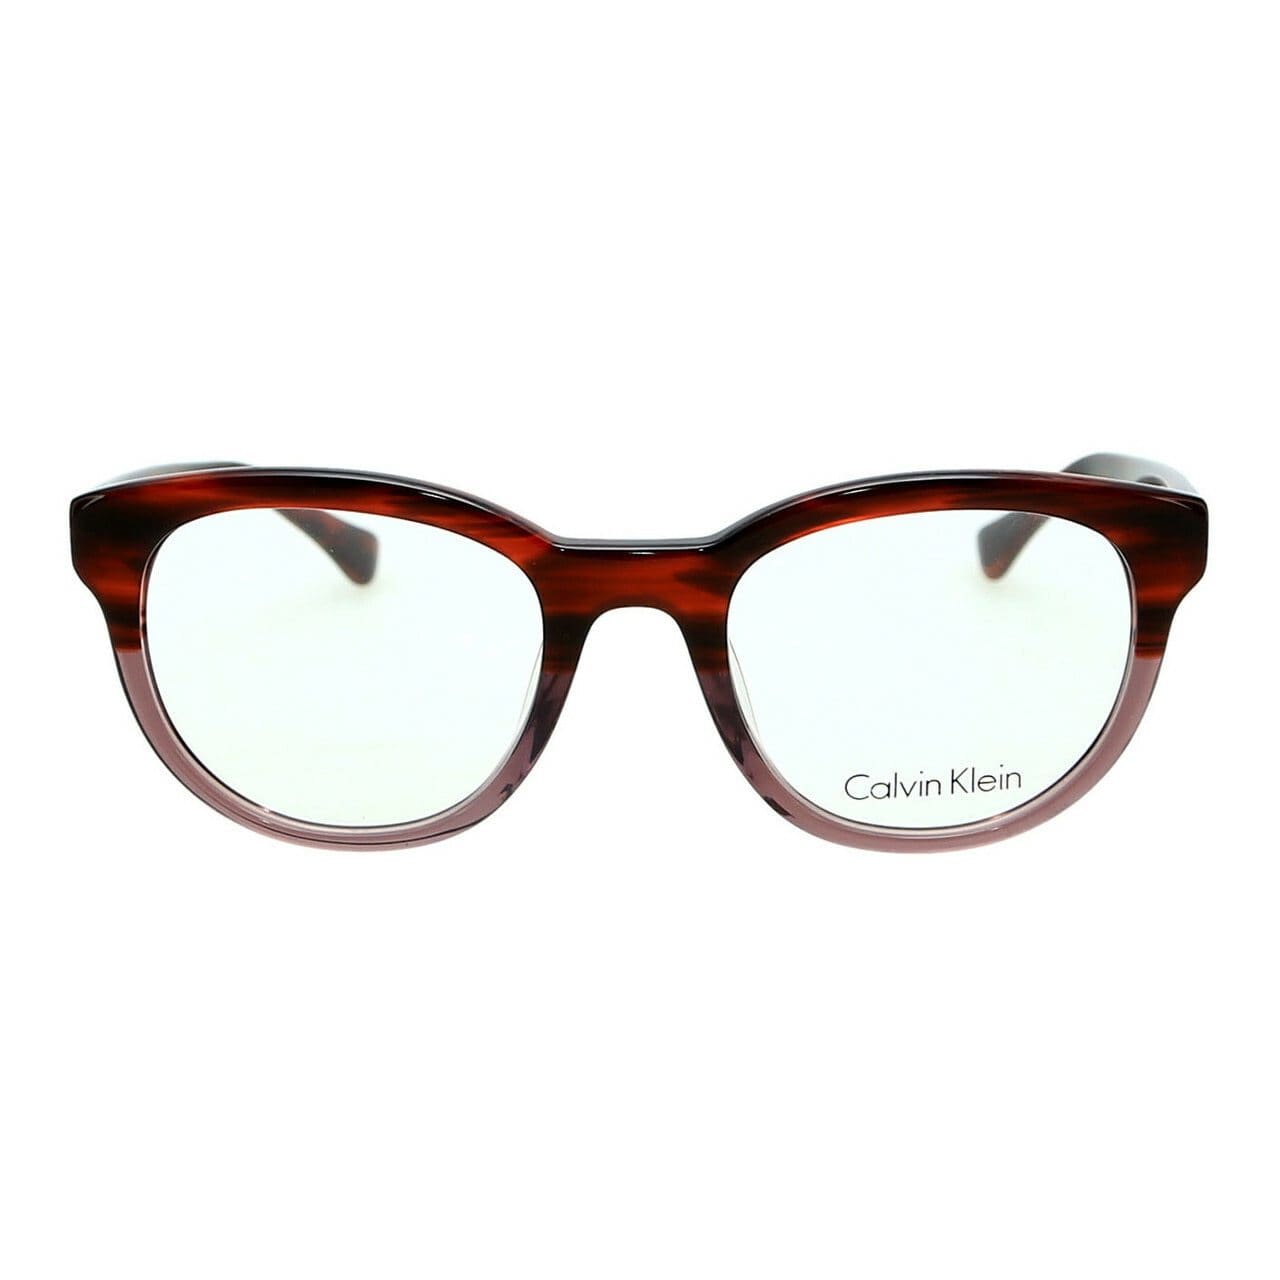 Calvin Klein CK-5887-619 Striped Red Grey Round Women's Plastic Eyeglasses 750779084892